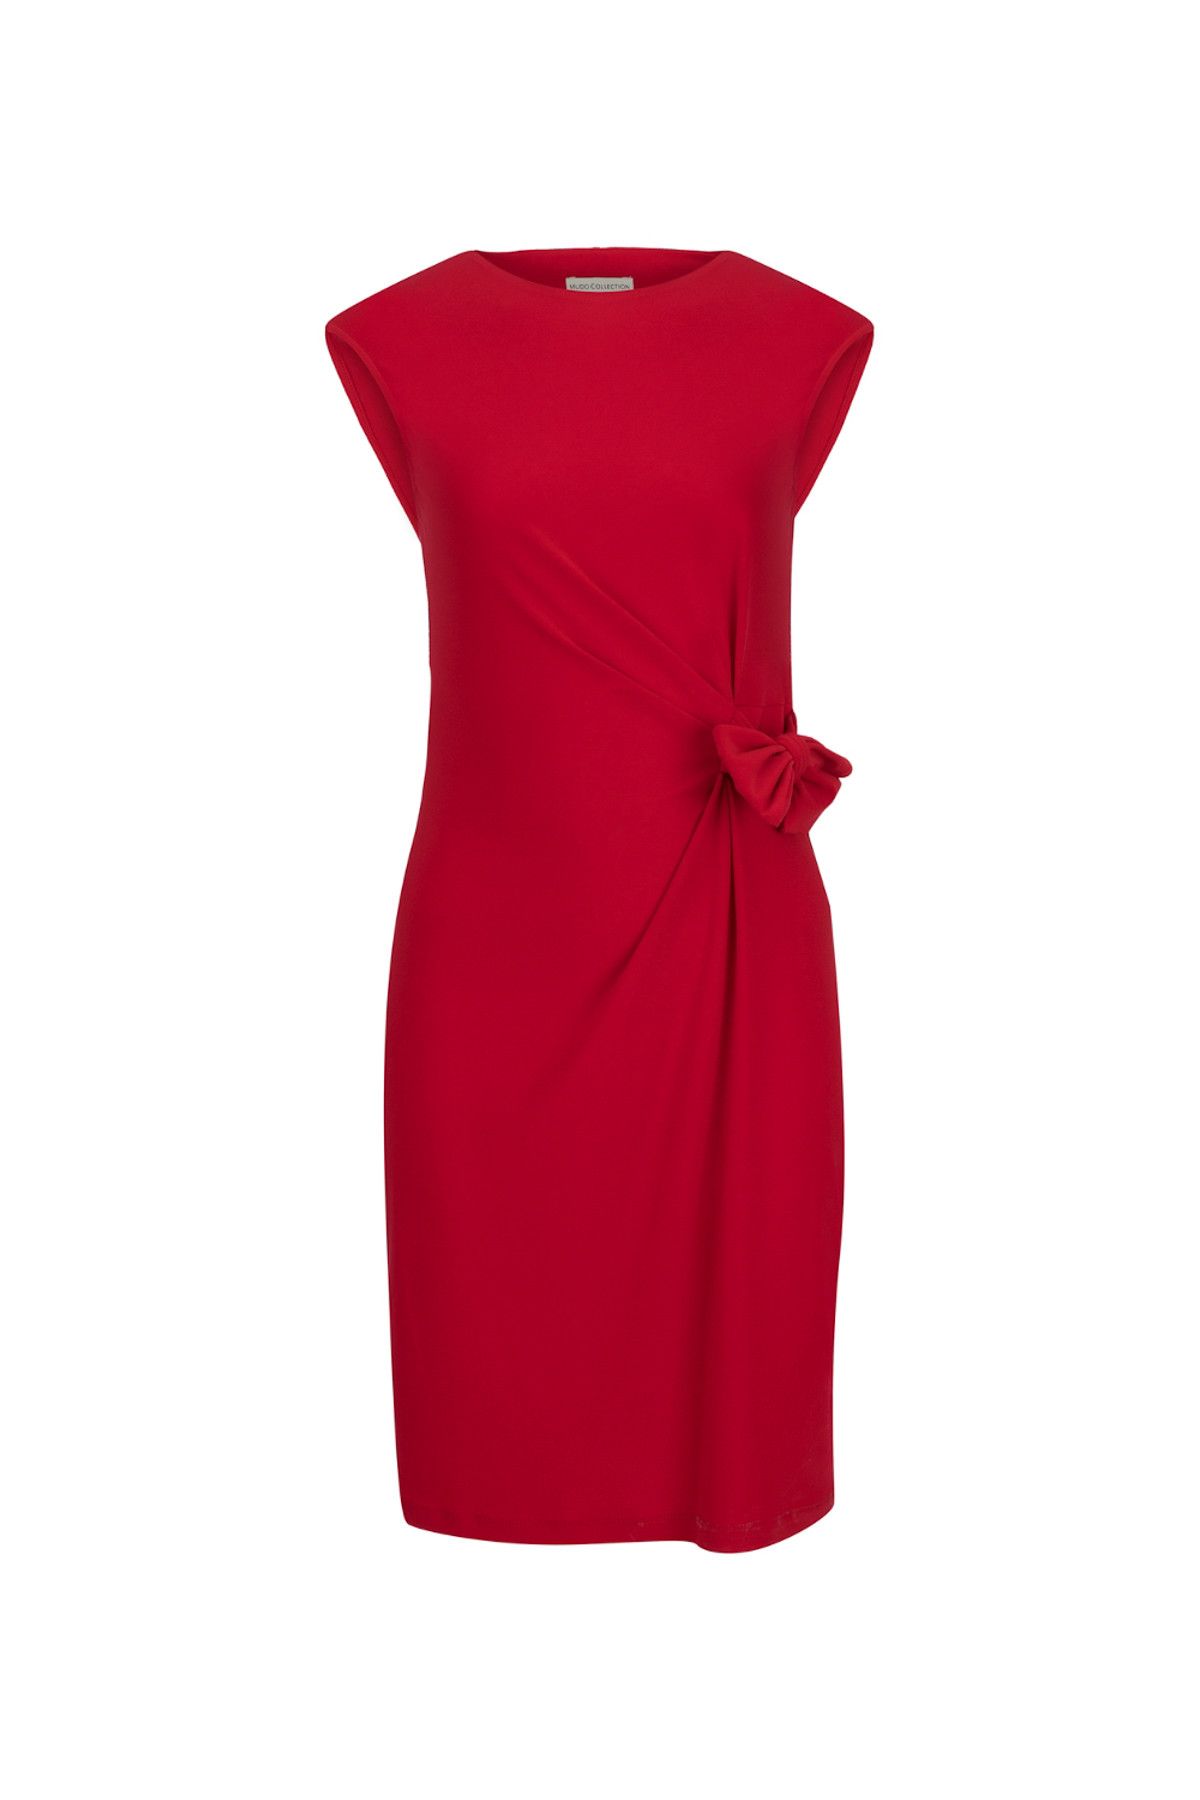 Mudo Kadın Kırmızı Elbise 1191147